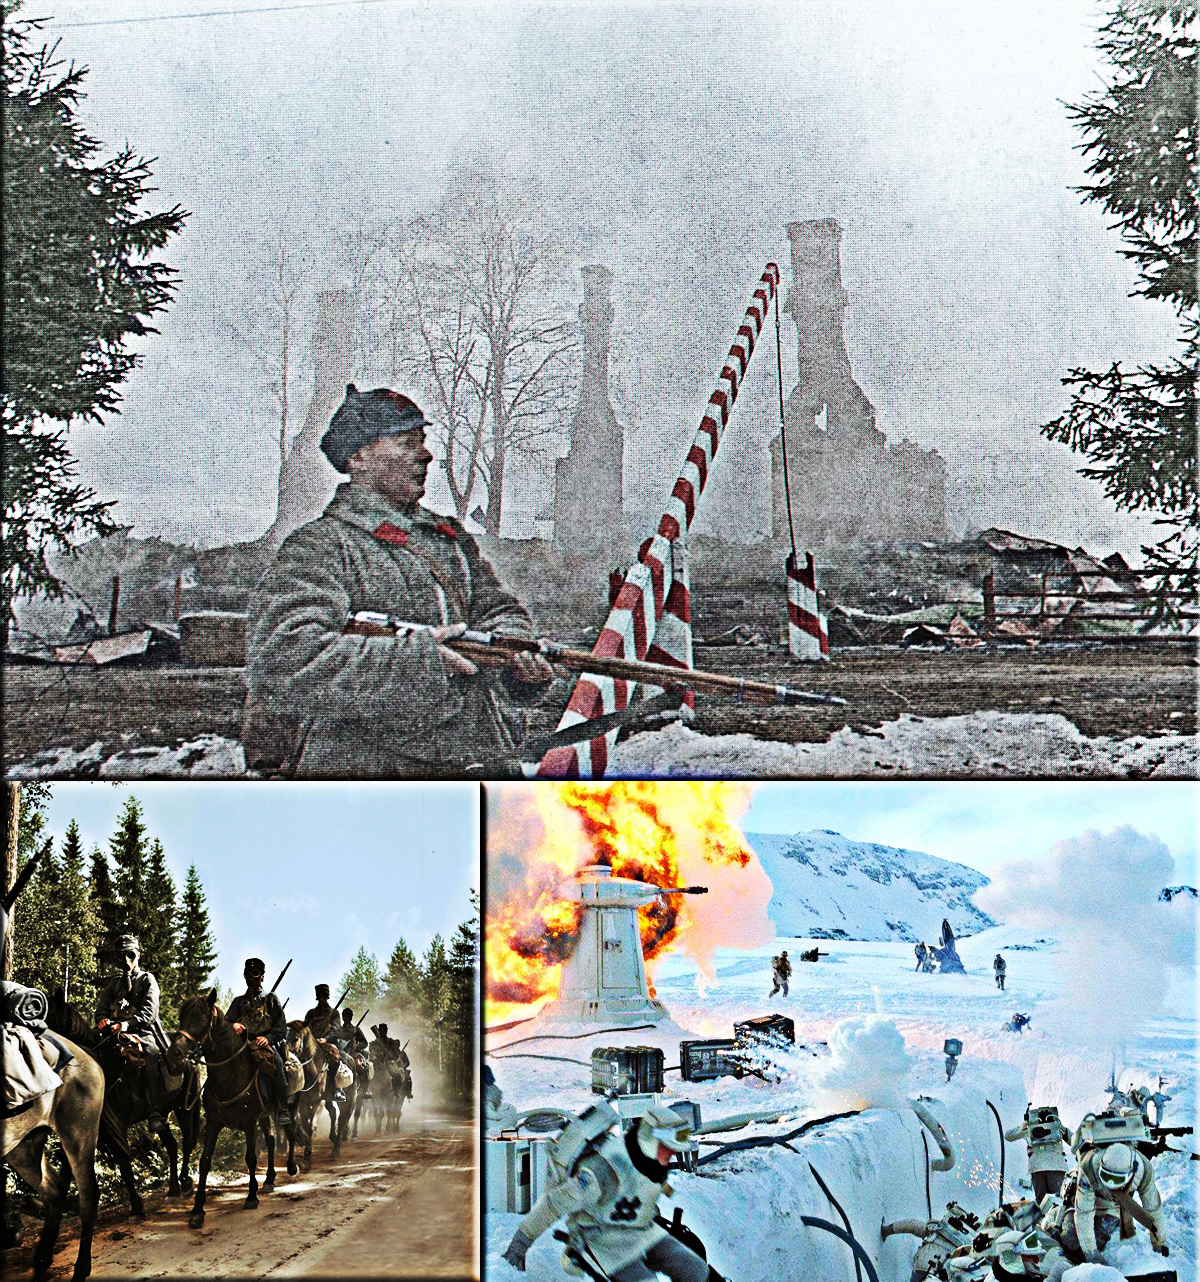 USSR attacks Finland on November 30, 1939